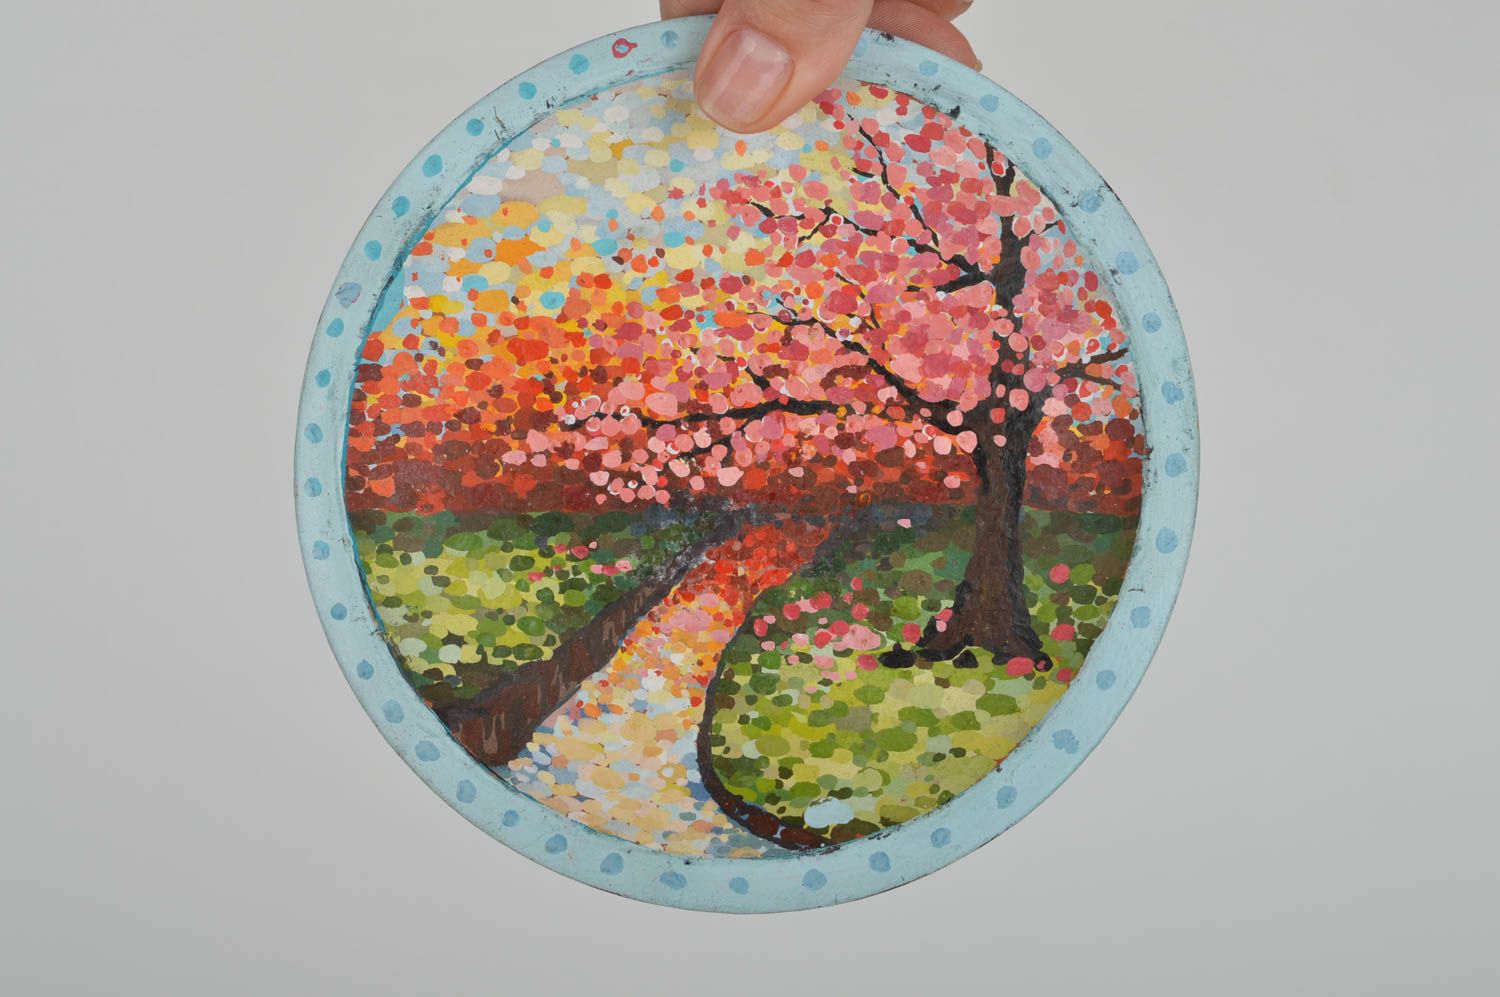 Керамическая тарелка расписанная акриловыми красками декоративная хэндмэйд Осень фото 3